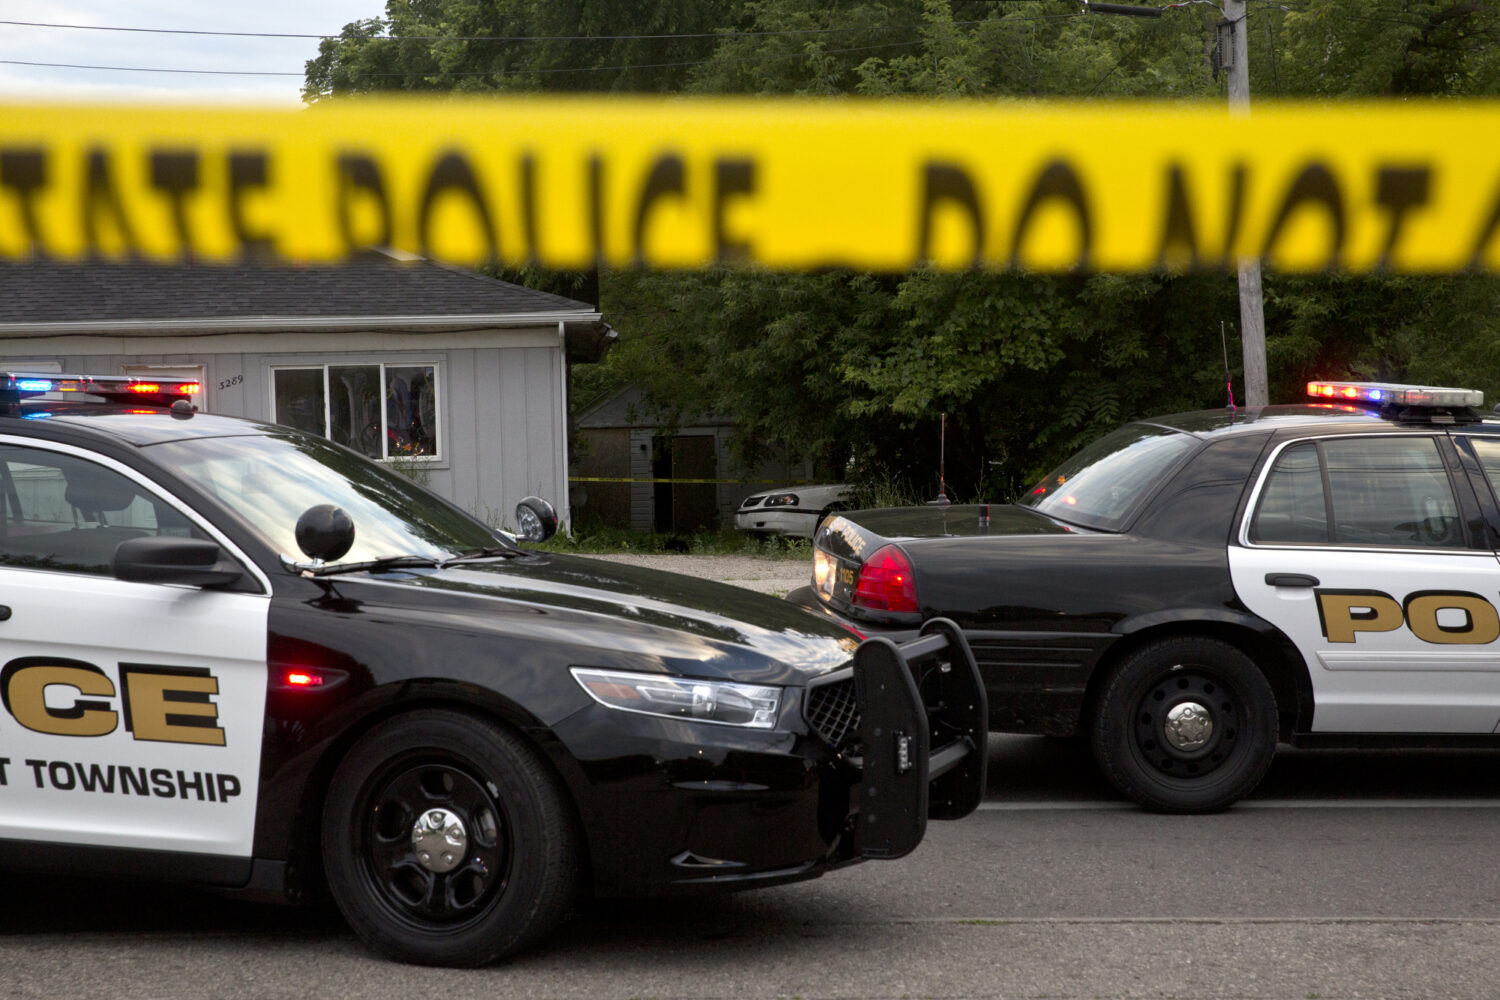 ΗΠΑ: Ένας 12χρονος σκοτώθηκε από σφαίρες και μια 20χρονη τραυματίστηκε ενώ ήταν μέσα στο αυτοκίνητό τους